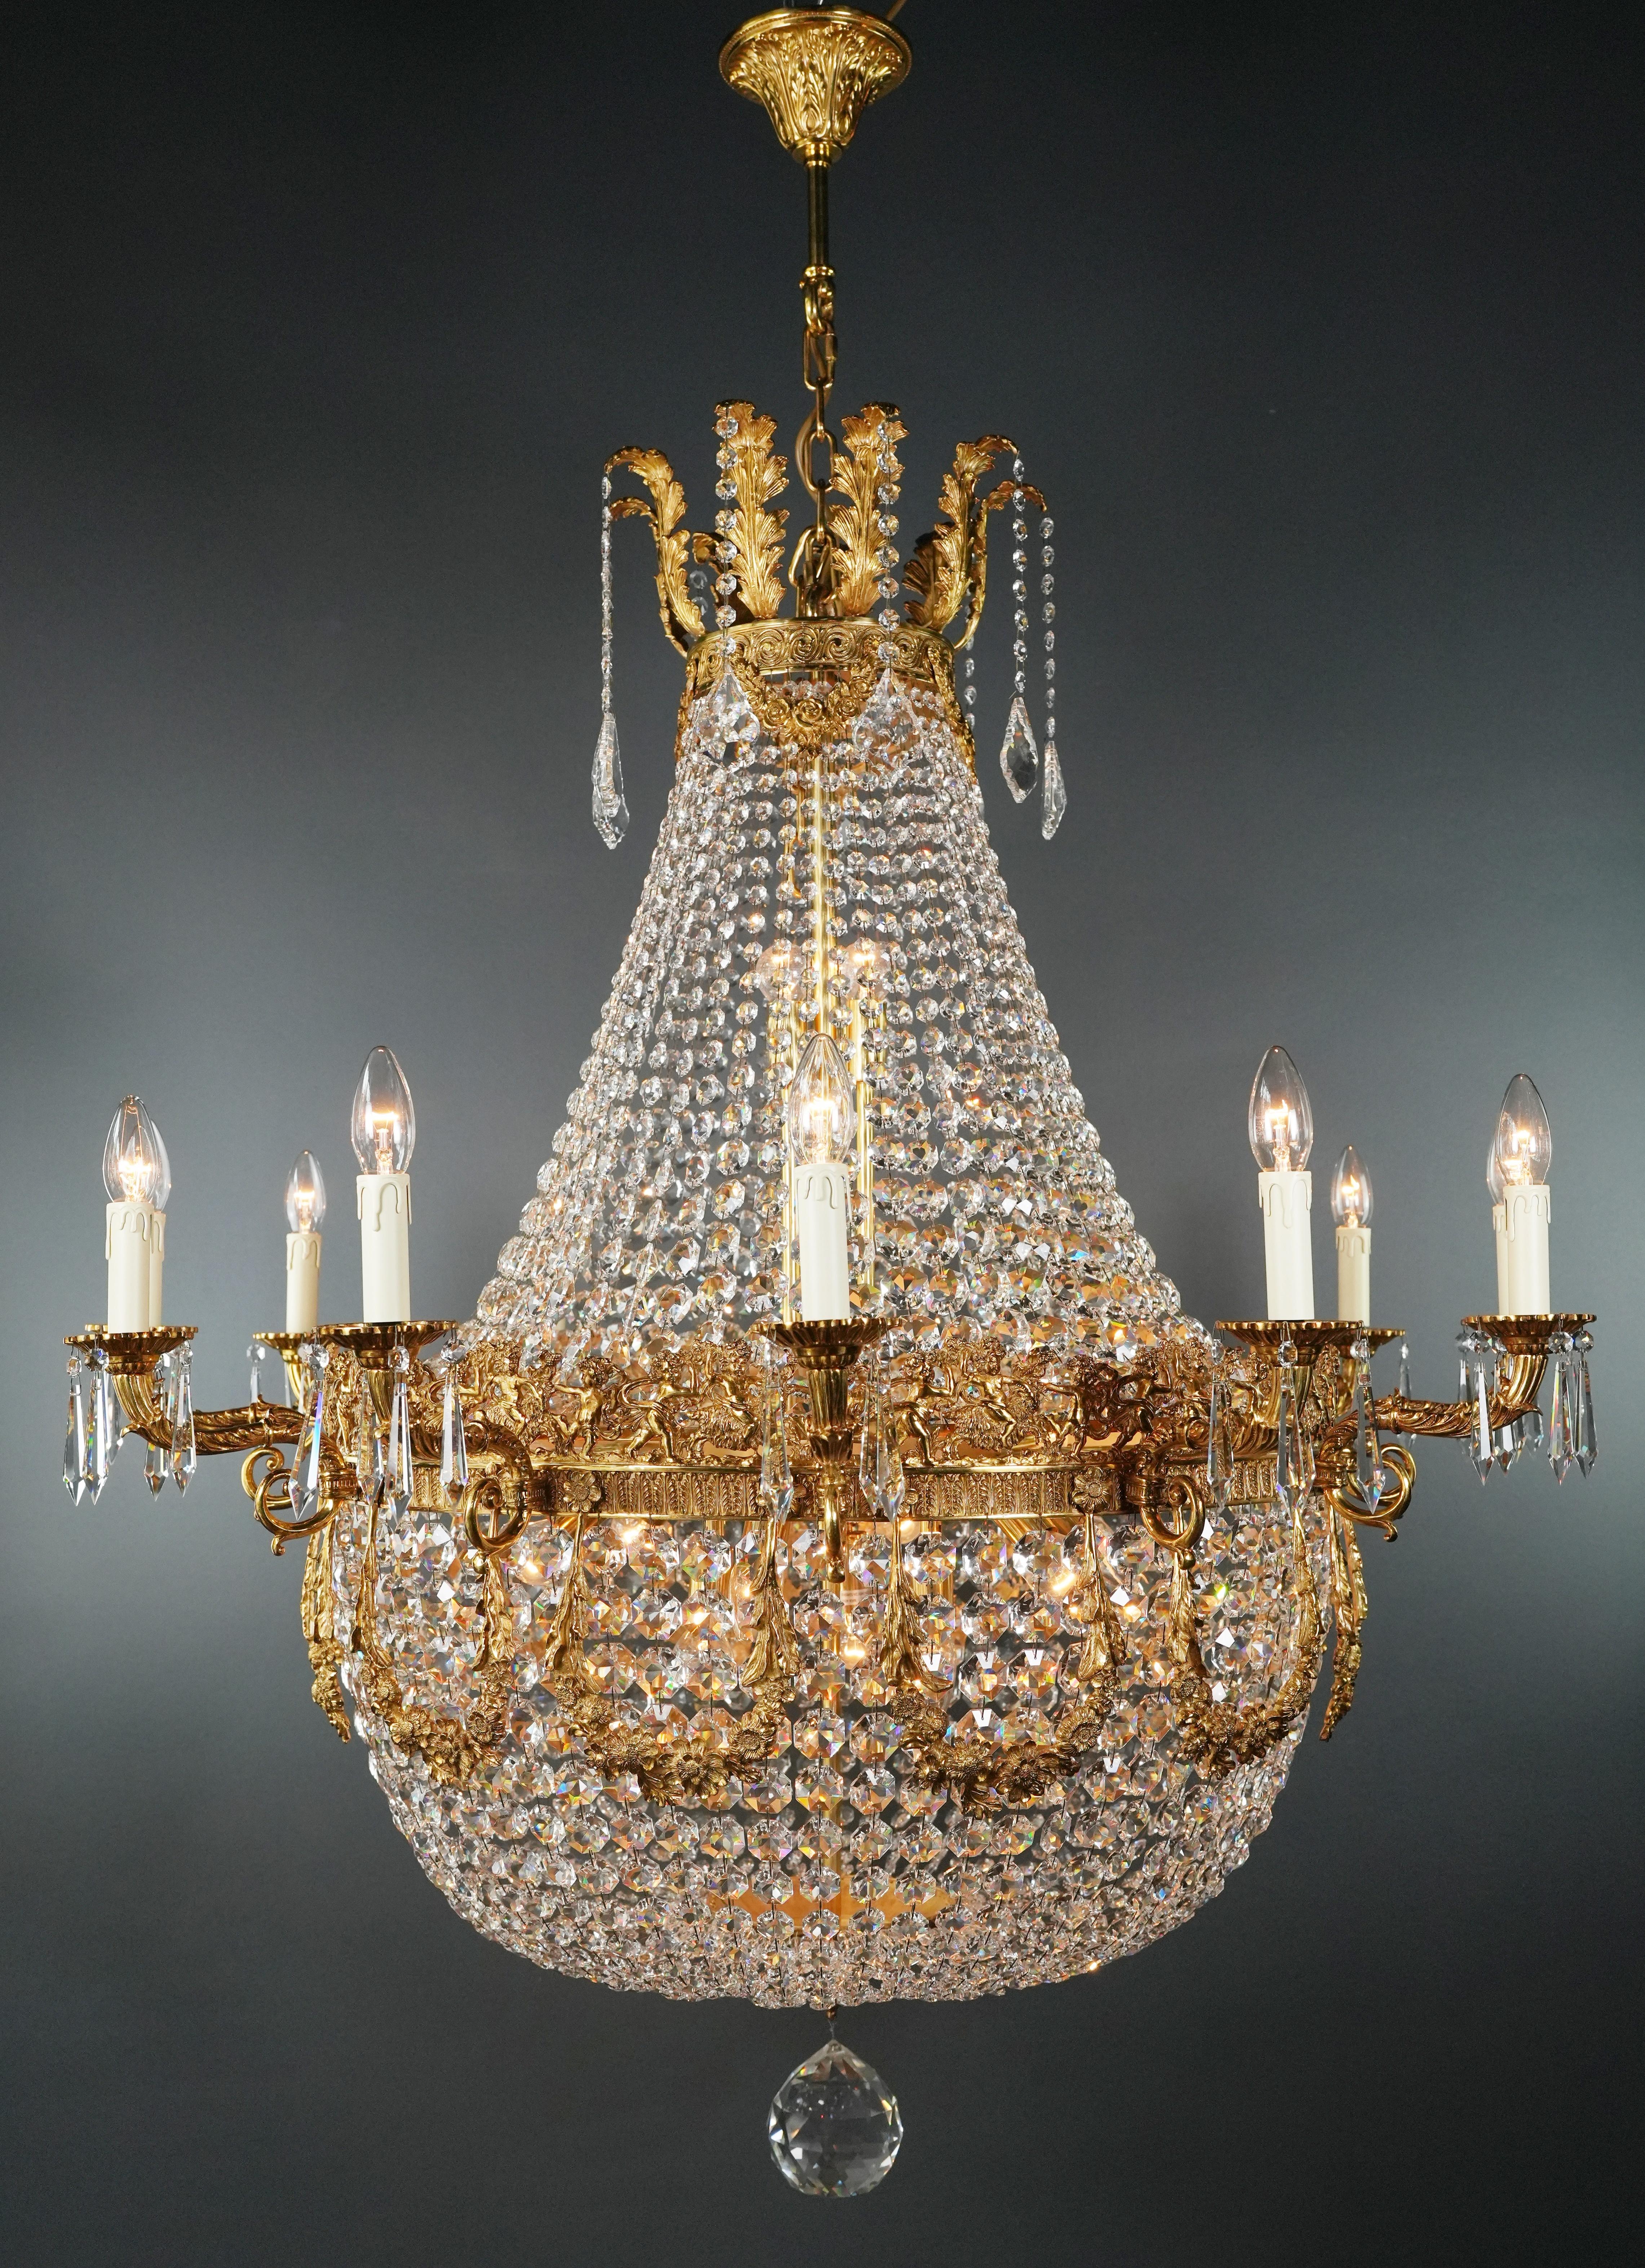 Voici un superbe lustre Empire Sac à Perles en laiton, une pièce exquise ornée de cristaux captivants, rappelant le style classique de l'ère Empire. Il s'agit d'une nouvelle reproduction, et plusieurs sont disponibles, ce qui vous permet d'apporter